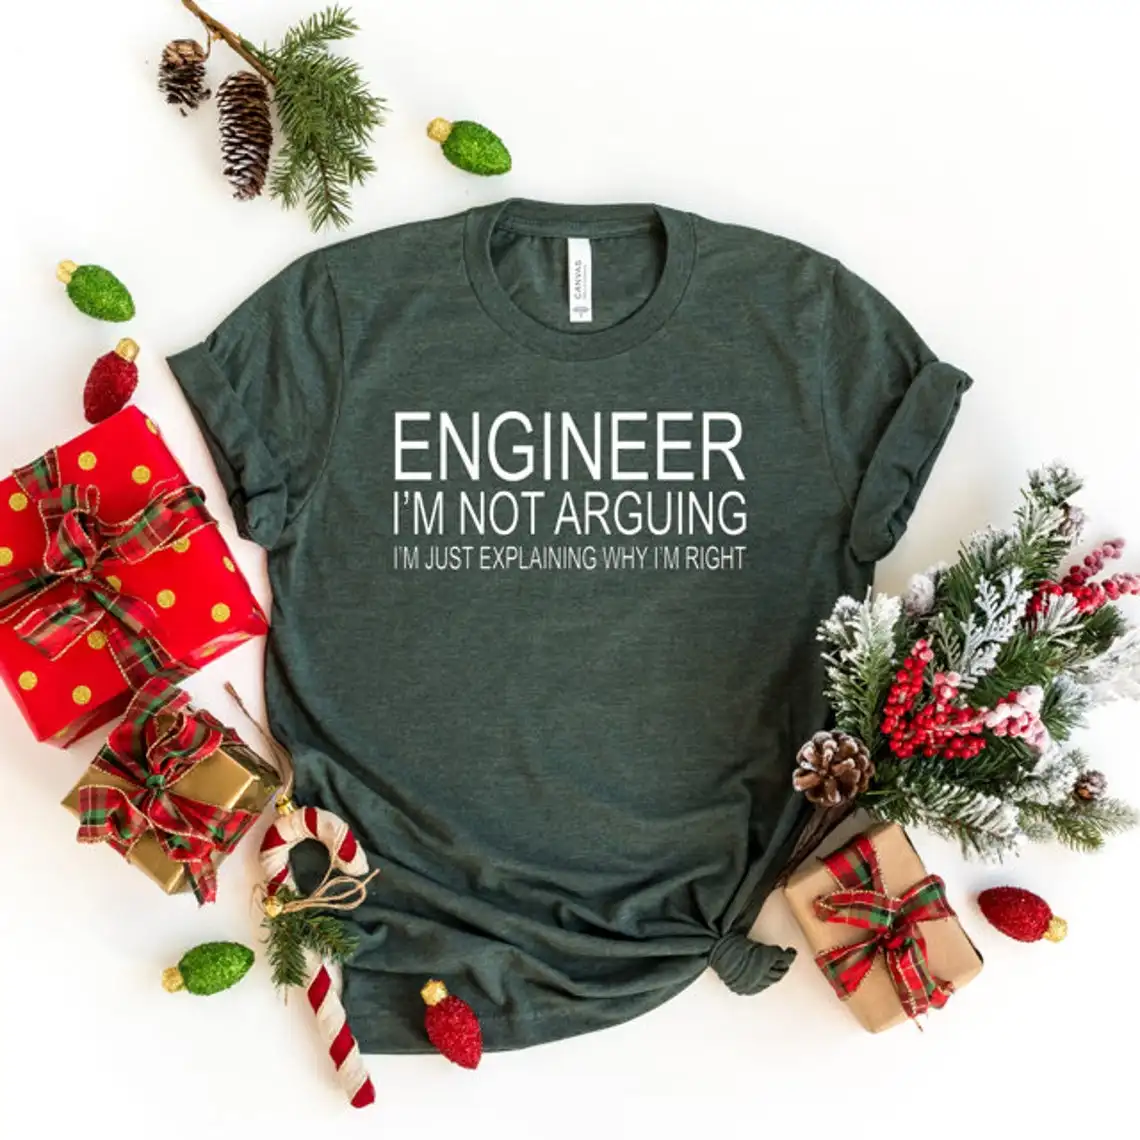 

Рубашка с надписью «Инженер я не спор», забавные Графические футболки со слоганом, Женская винтажная парная футболка гранж, забавные праздн...